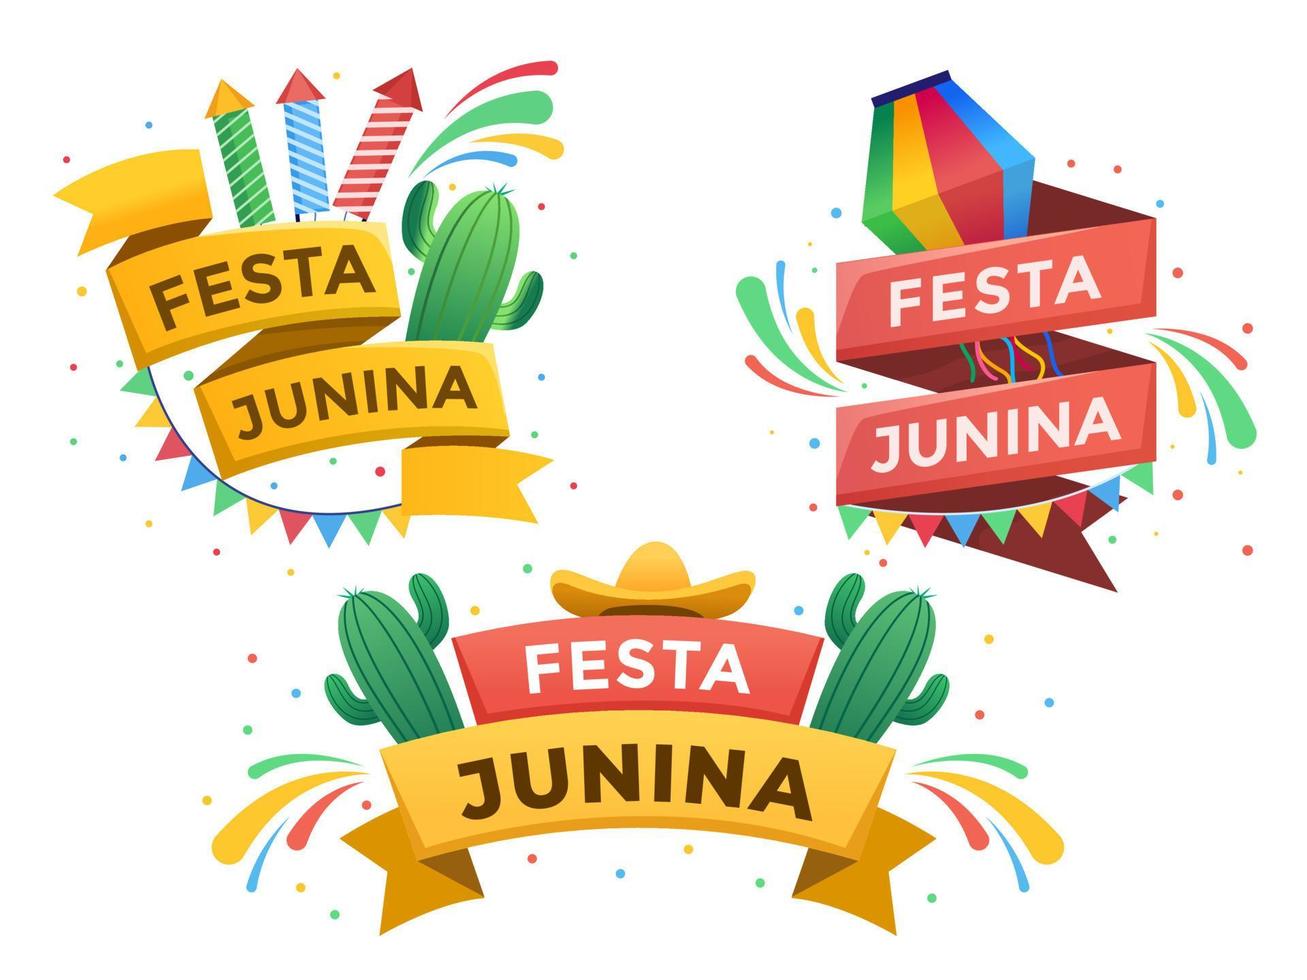 conception de ruban festa junina avec texte et avec 3 variantes. élément de conception festa junina. peut être utilisé pour les bannières, les affiches, les dépliants, les cartes de vœux, les cartes postales, les animations, le Web, les modèles, les impressions, etc. vecteur